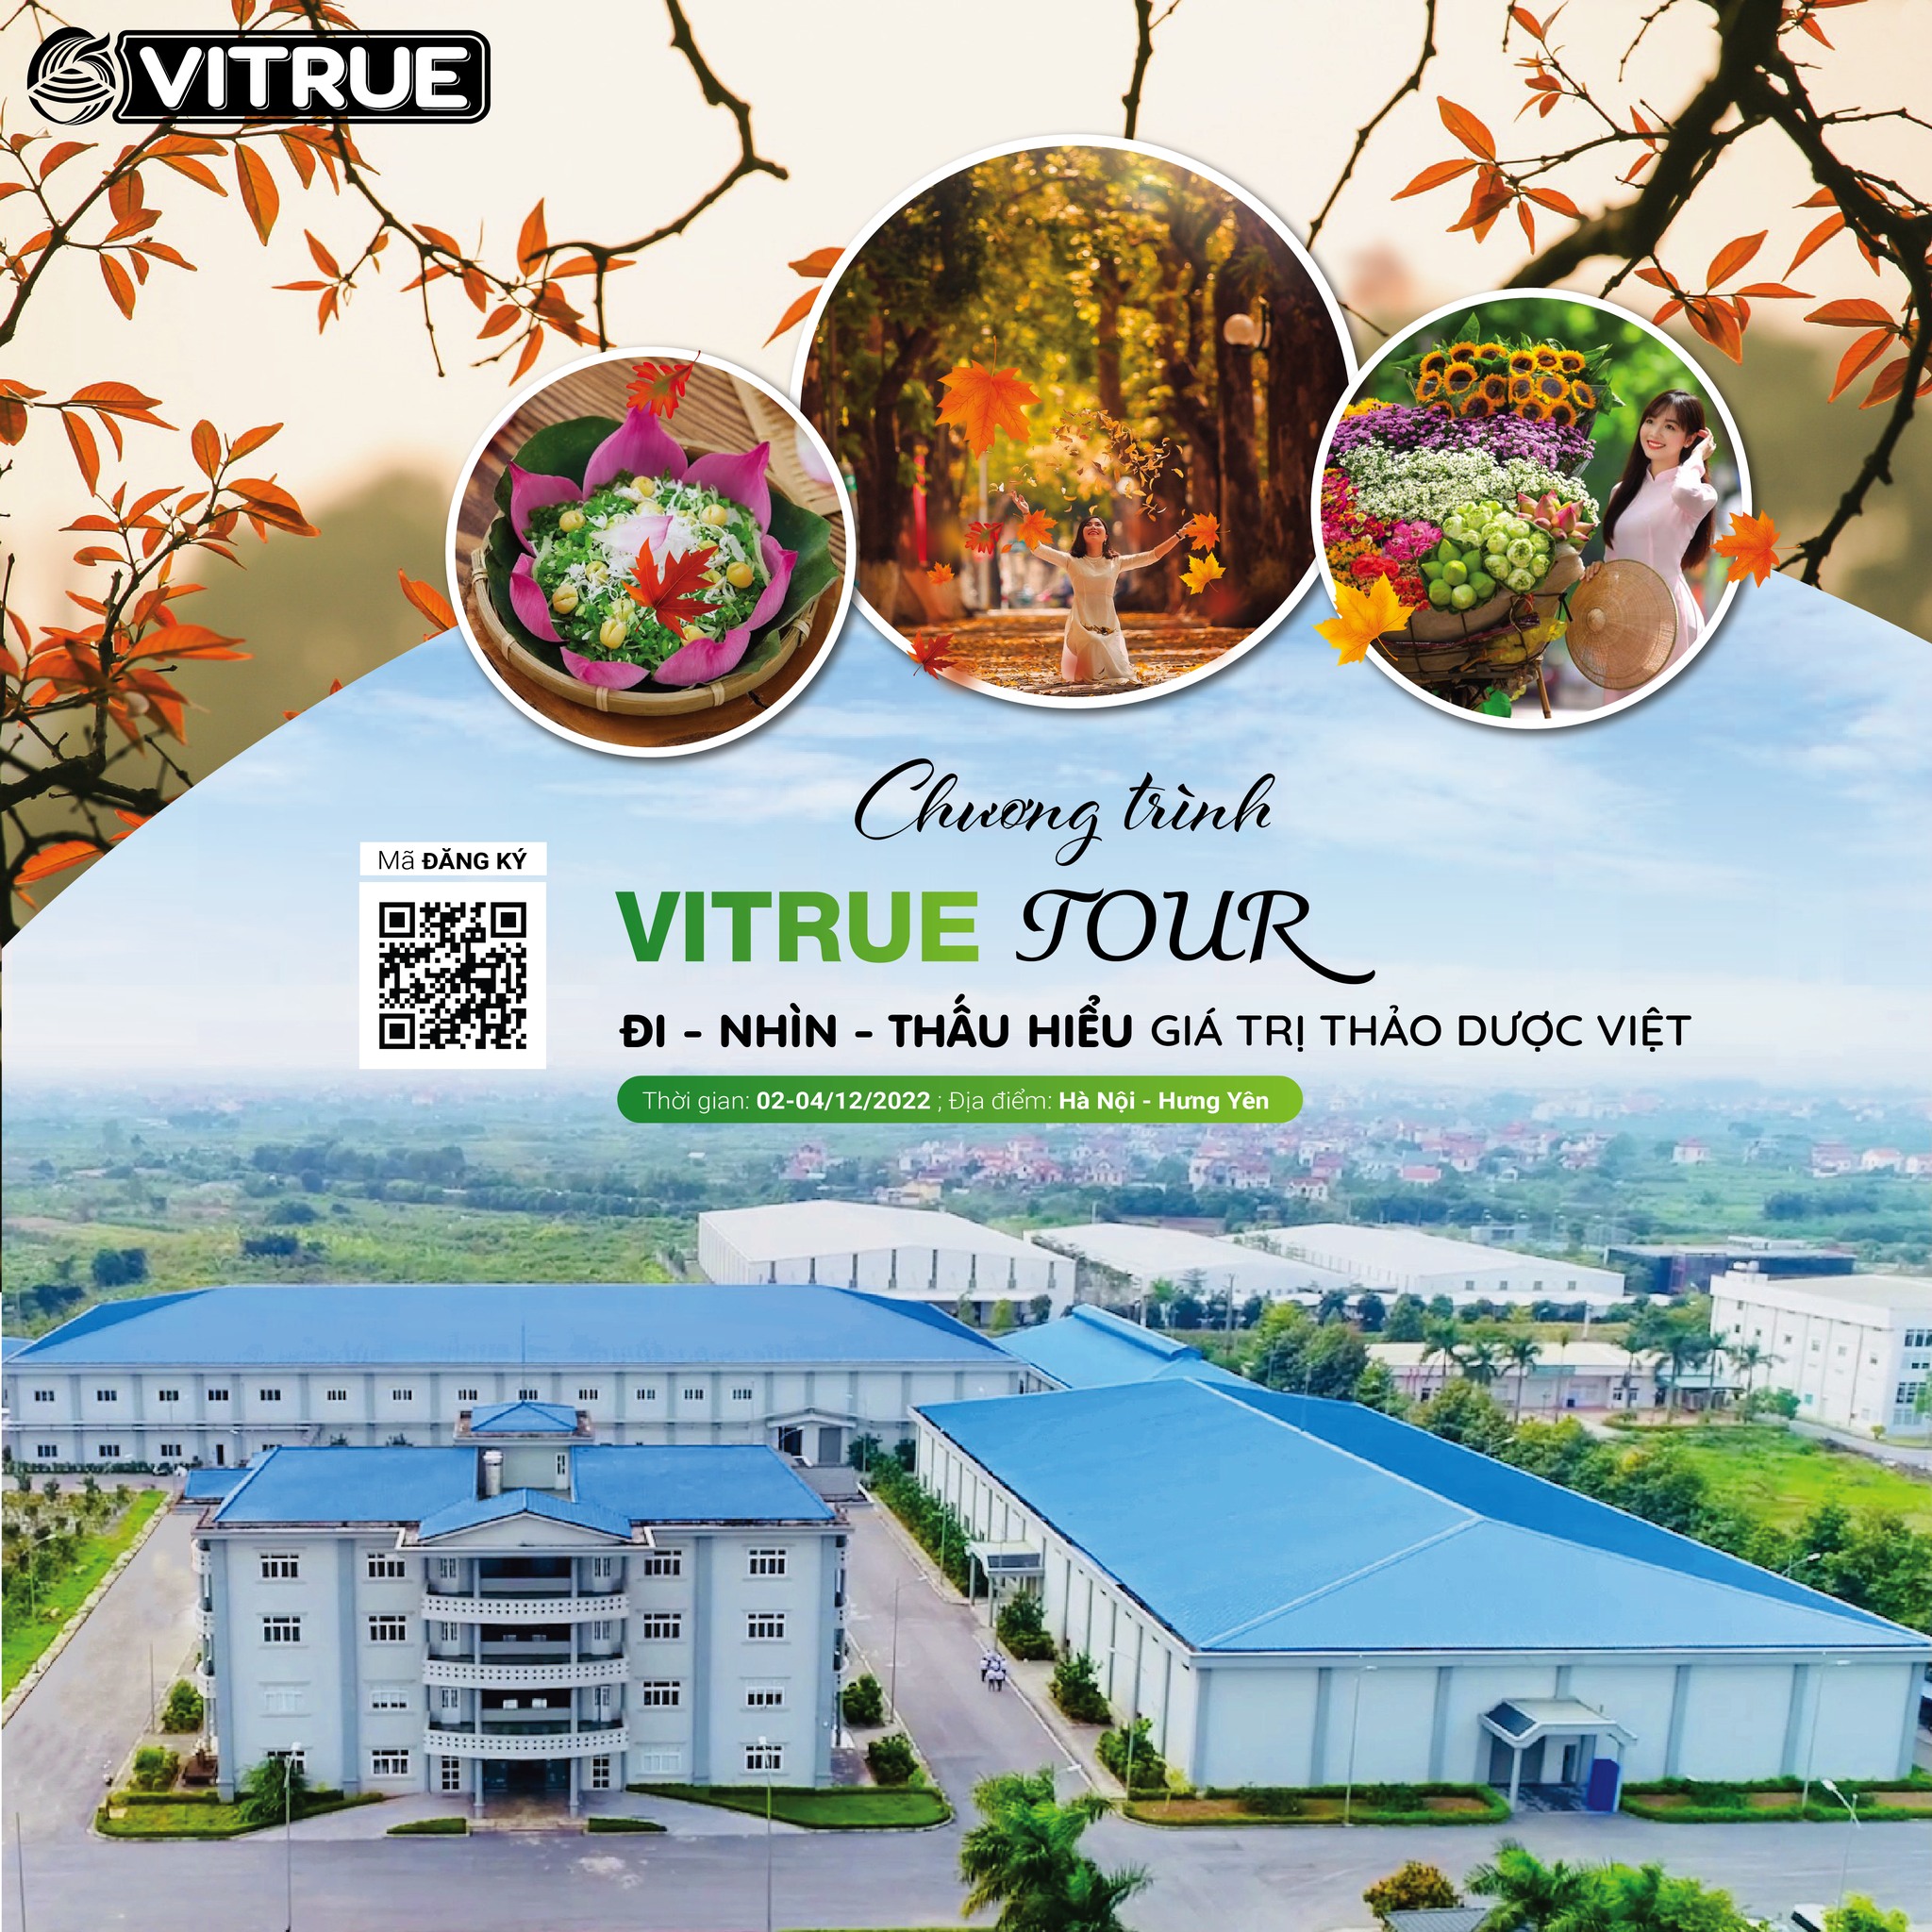 VITRUE TOUR 2022: Đi – Nhìn – Thấu hiểu giá trị thảo dược Việt